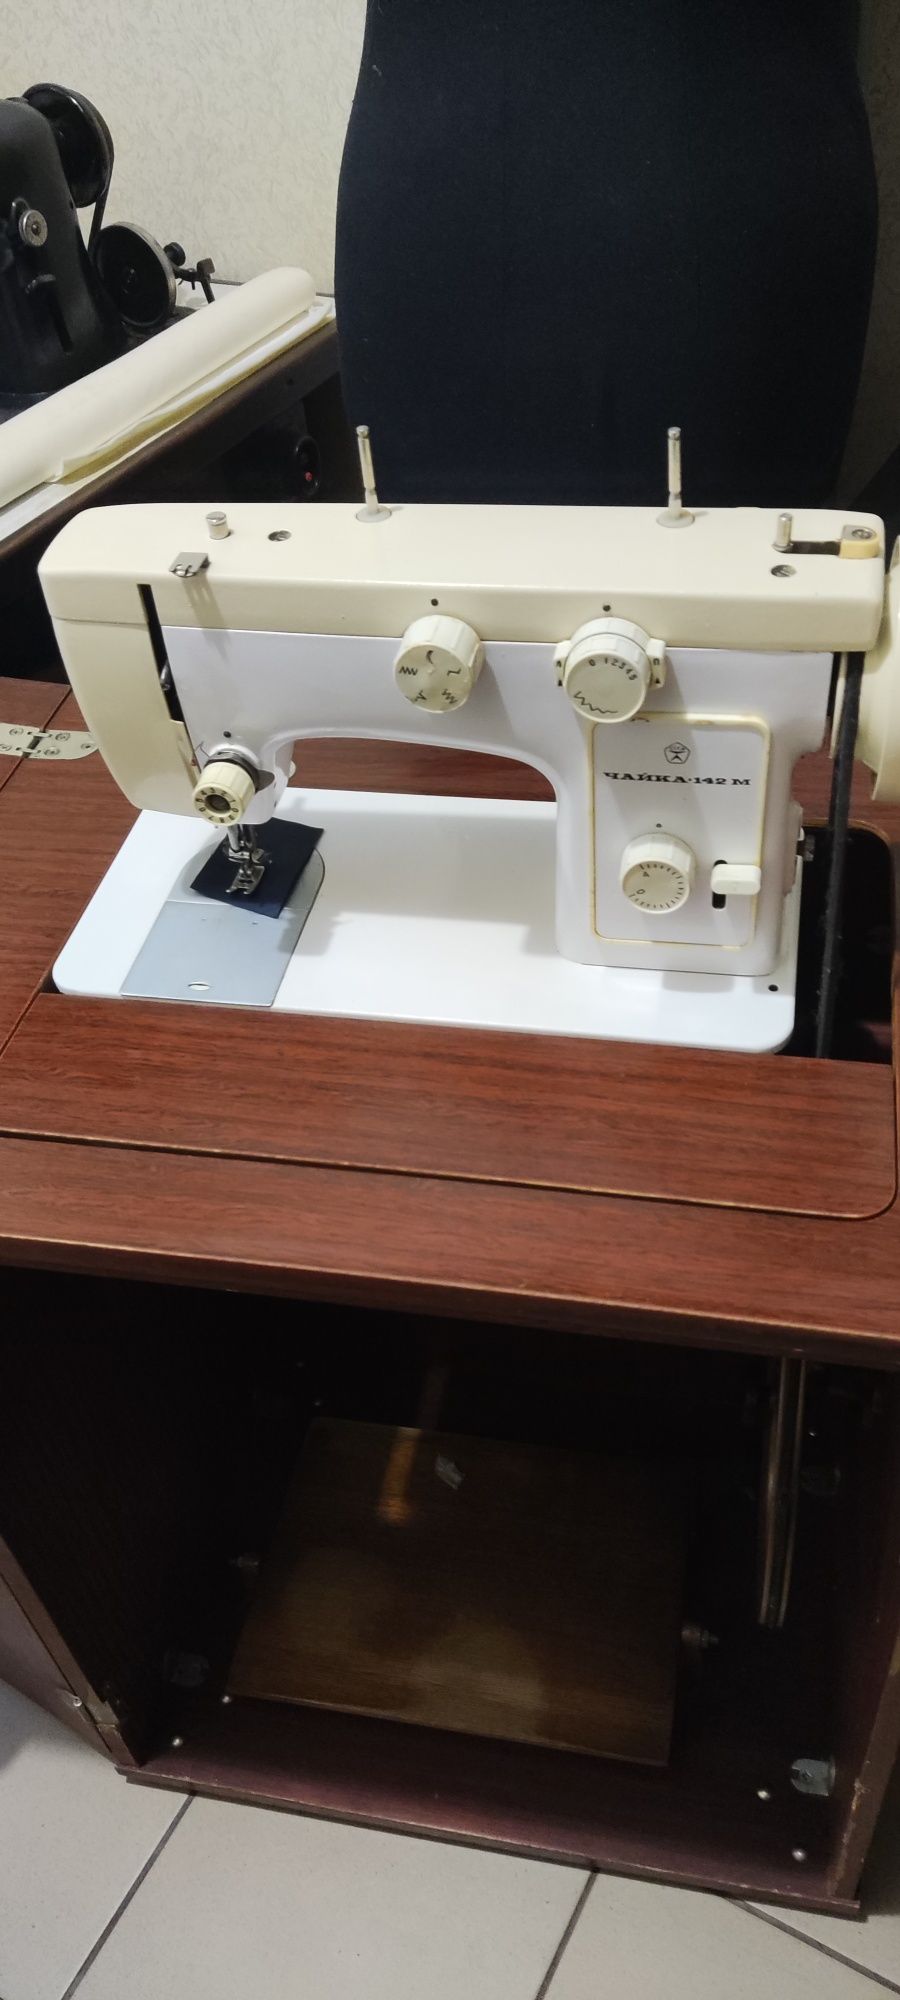 Швейная машина Чайка 142М